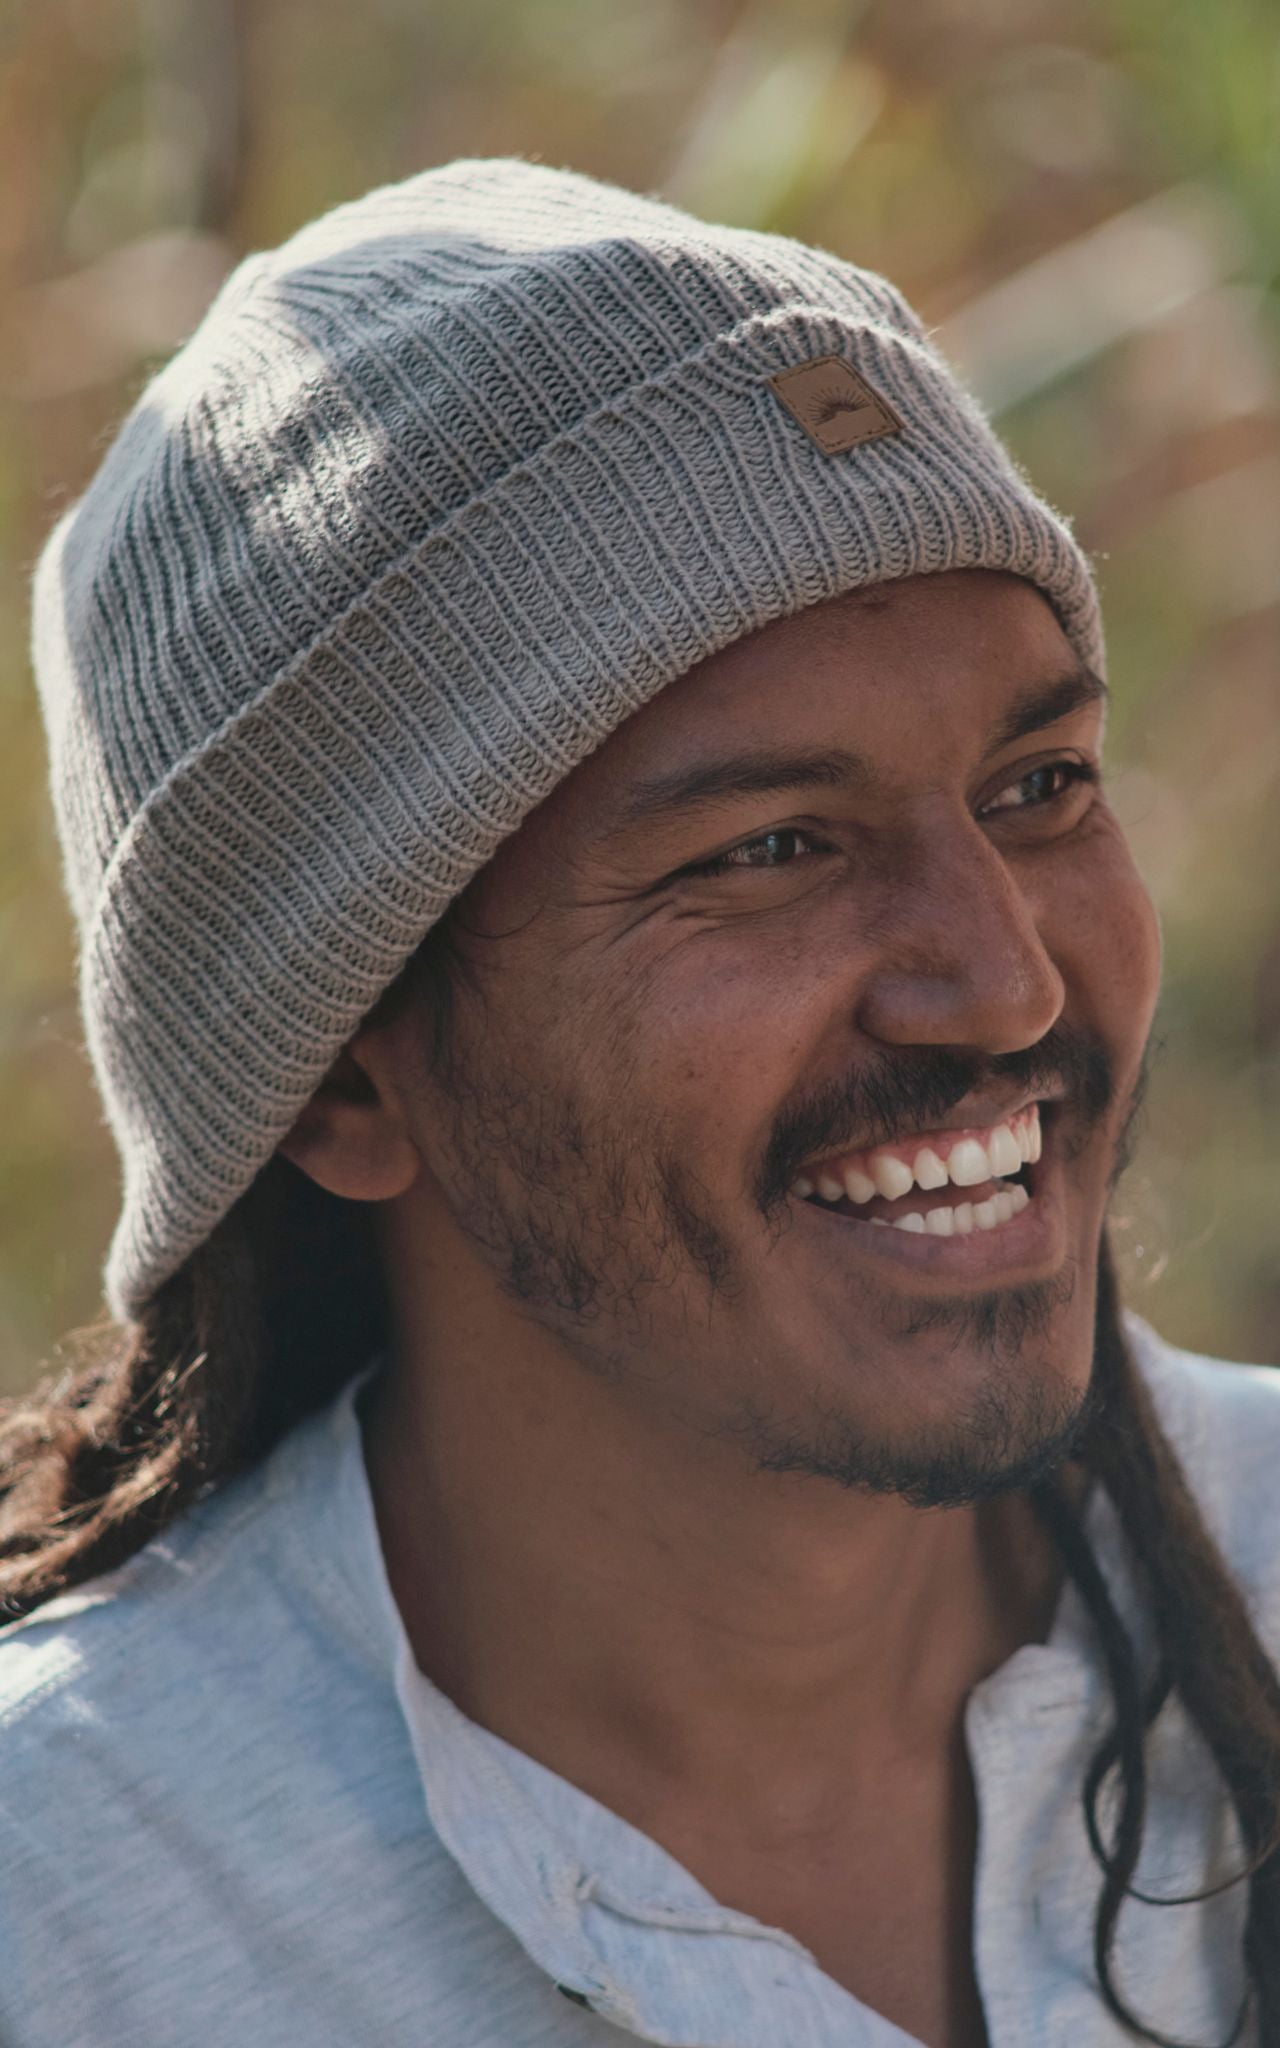 Surya Australia Merino Wool 'Fisherman' Beanie for men made in Nepal - light grey